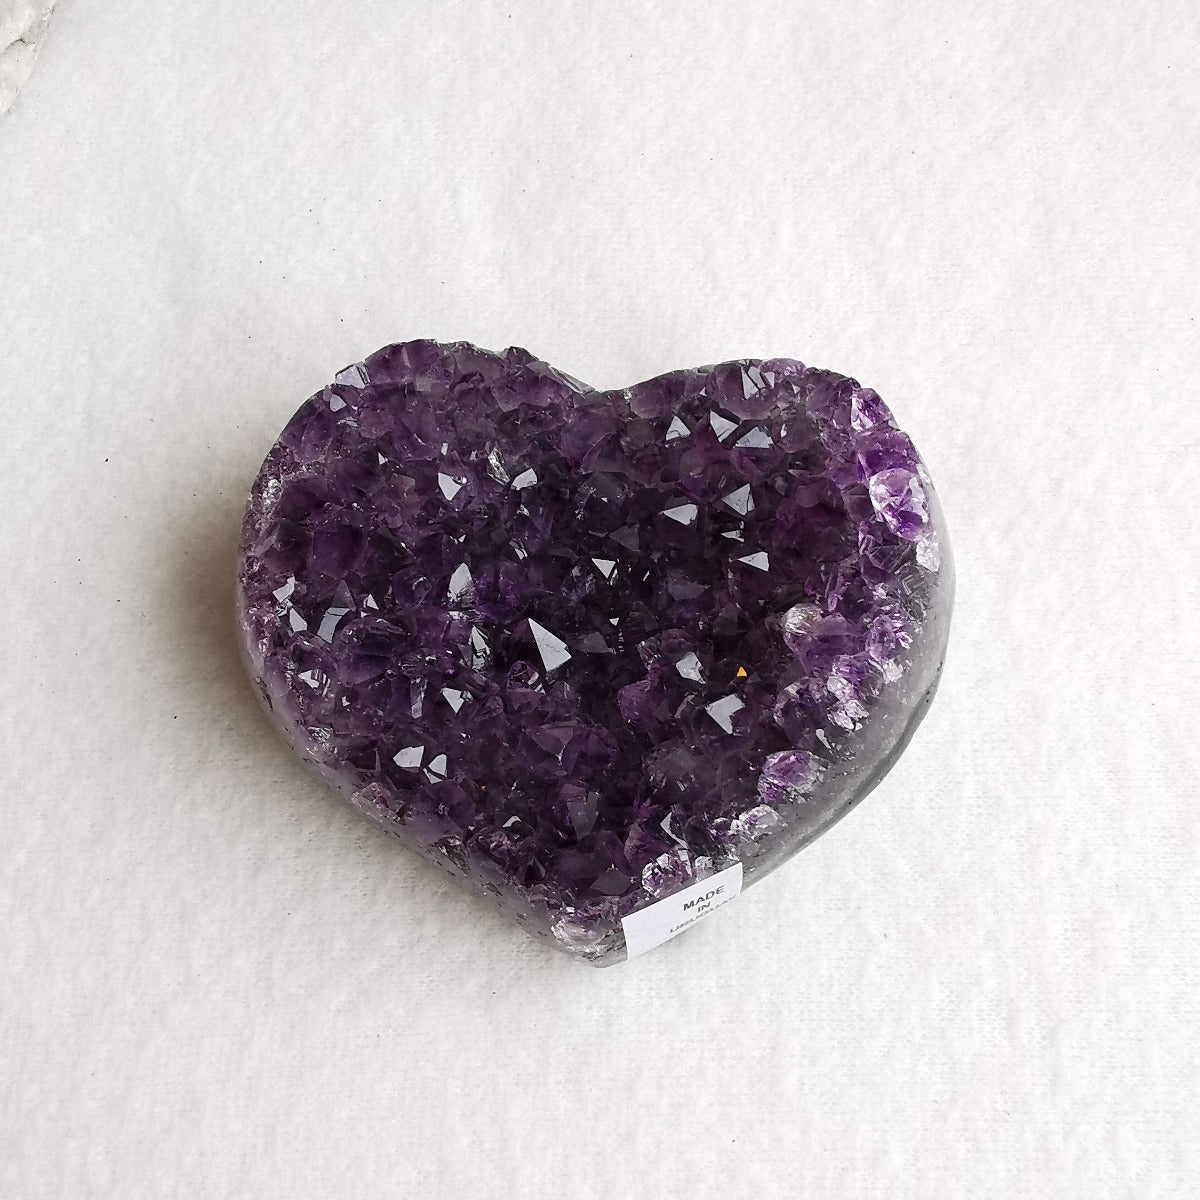 Amethyst krystallhjerte nr. 10 - Amethyst Crystal Heart